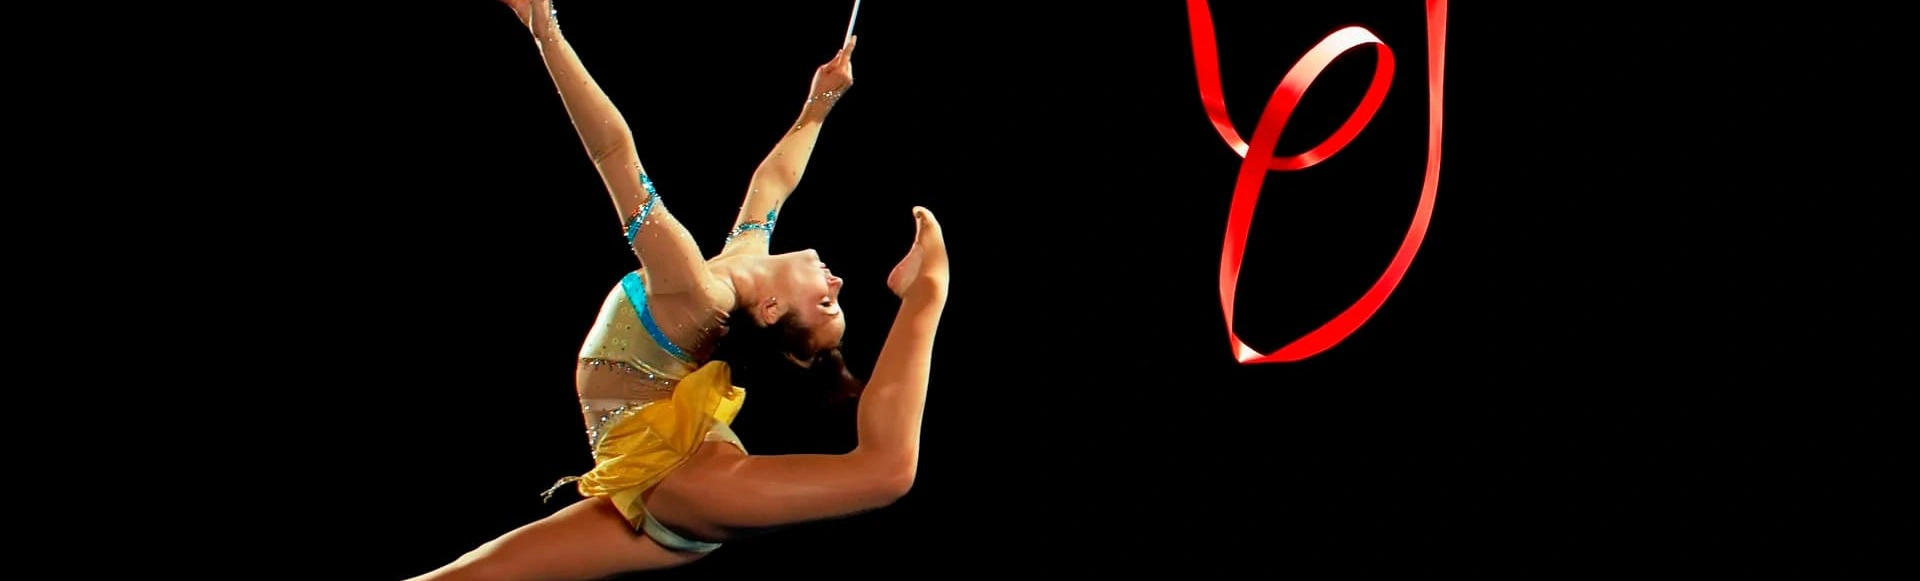 В Екатеринбурге состоится финал Кубка России по художественной гимнастике